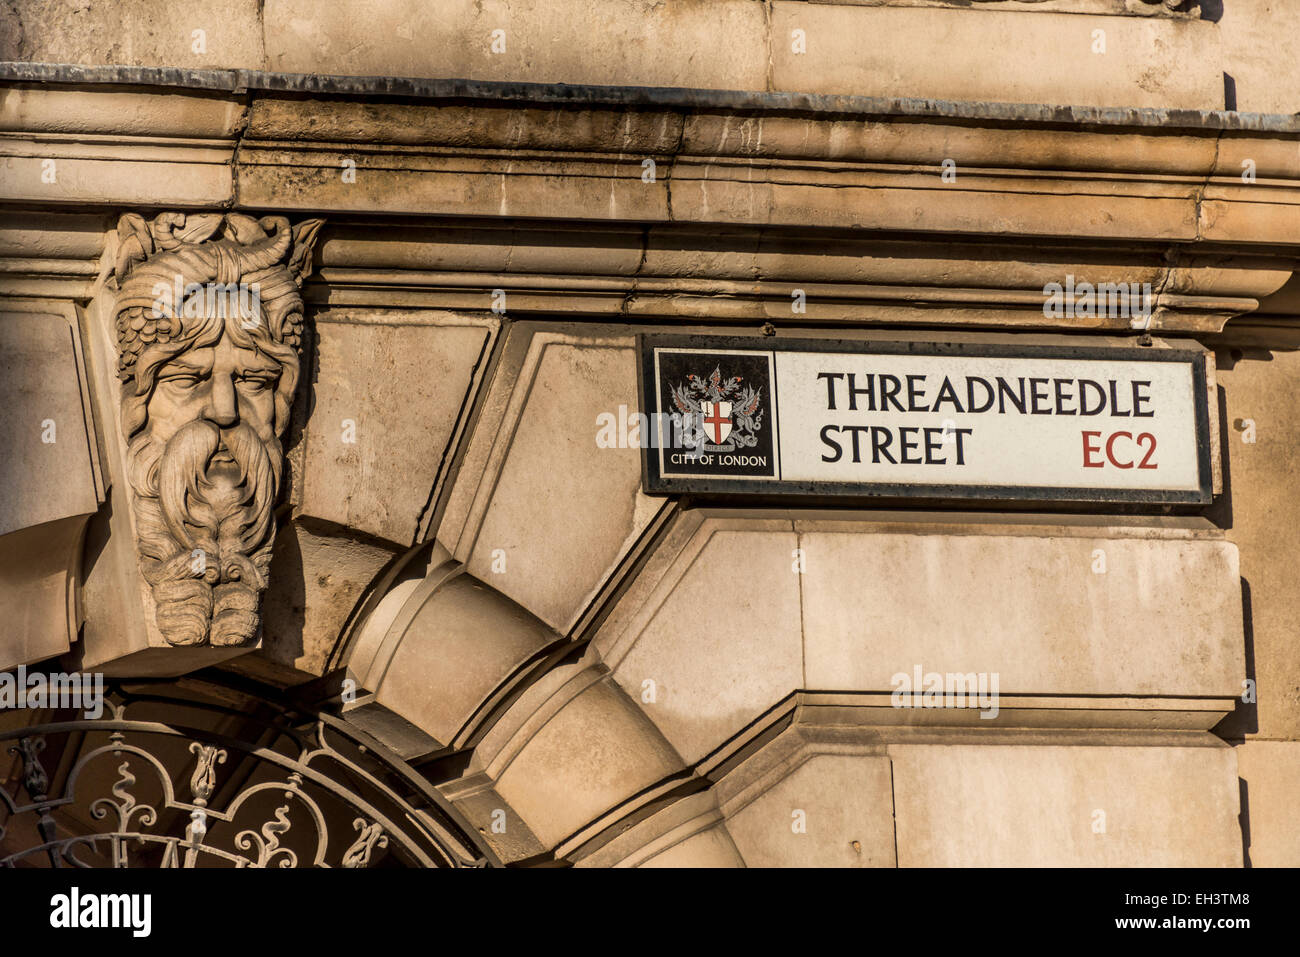 Un panneau routier indique Threadneedle Street EC2 ; la rue est au cœur de la ville de Londres et la maison à la Banque d'Angleterre Banque D'Images